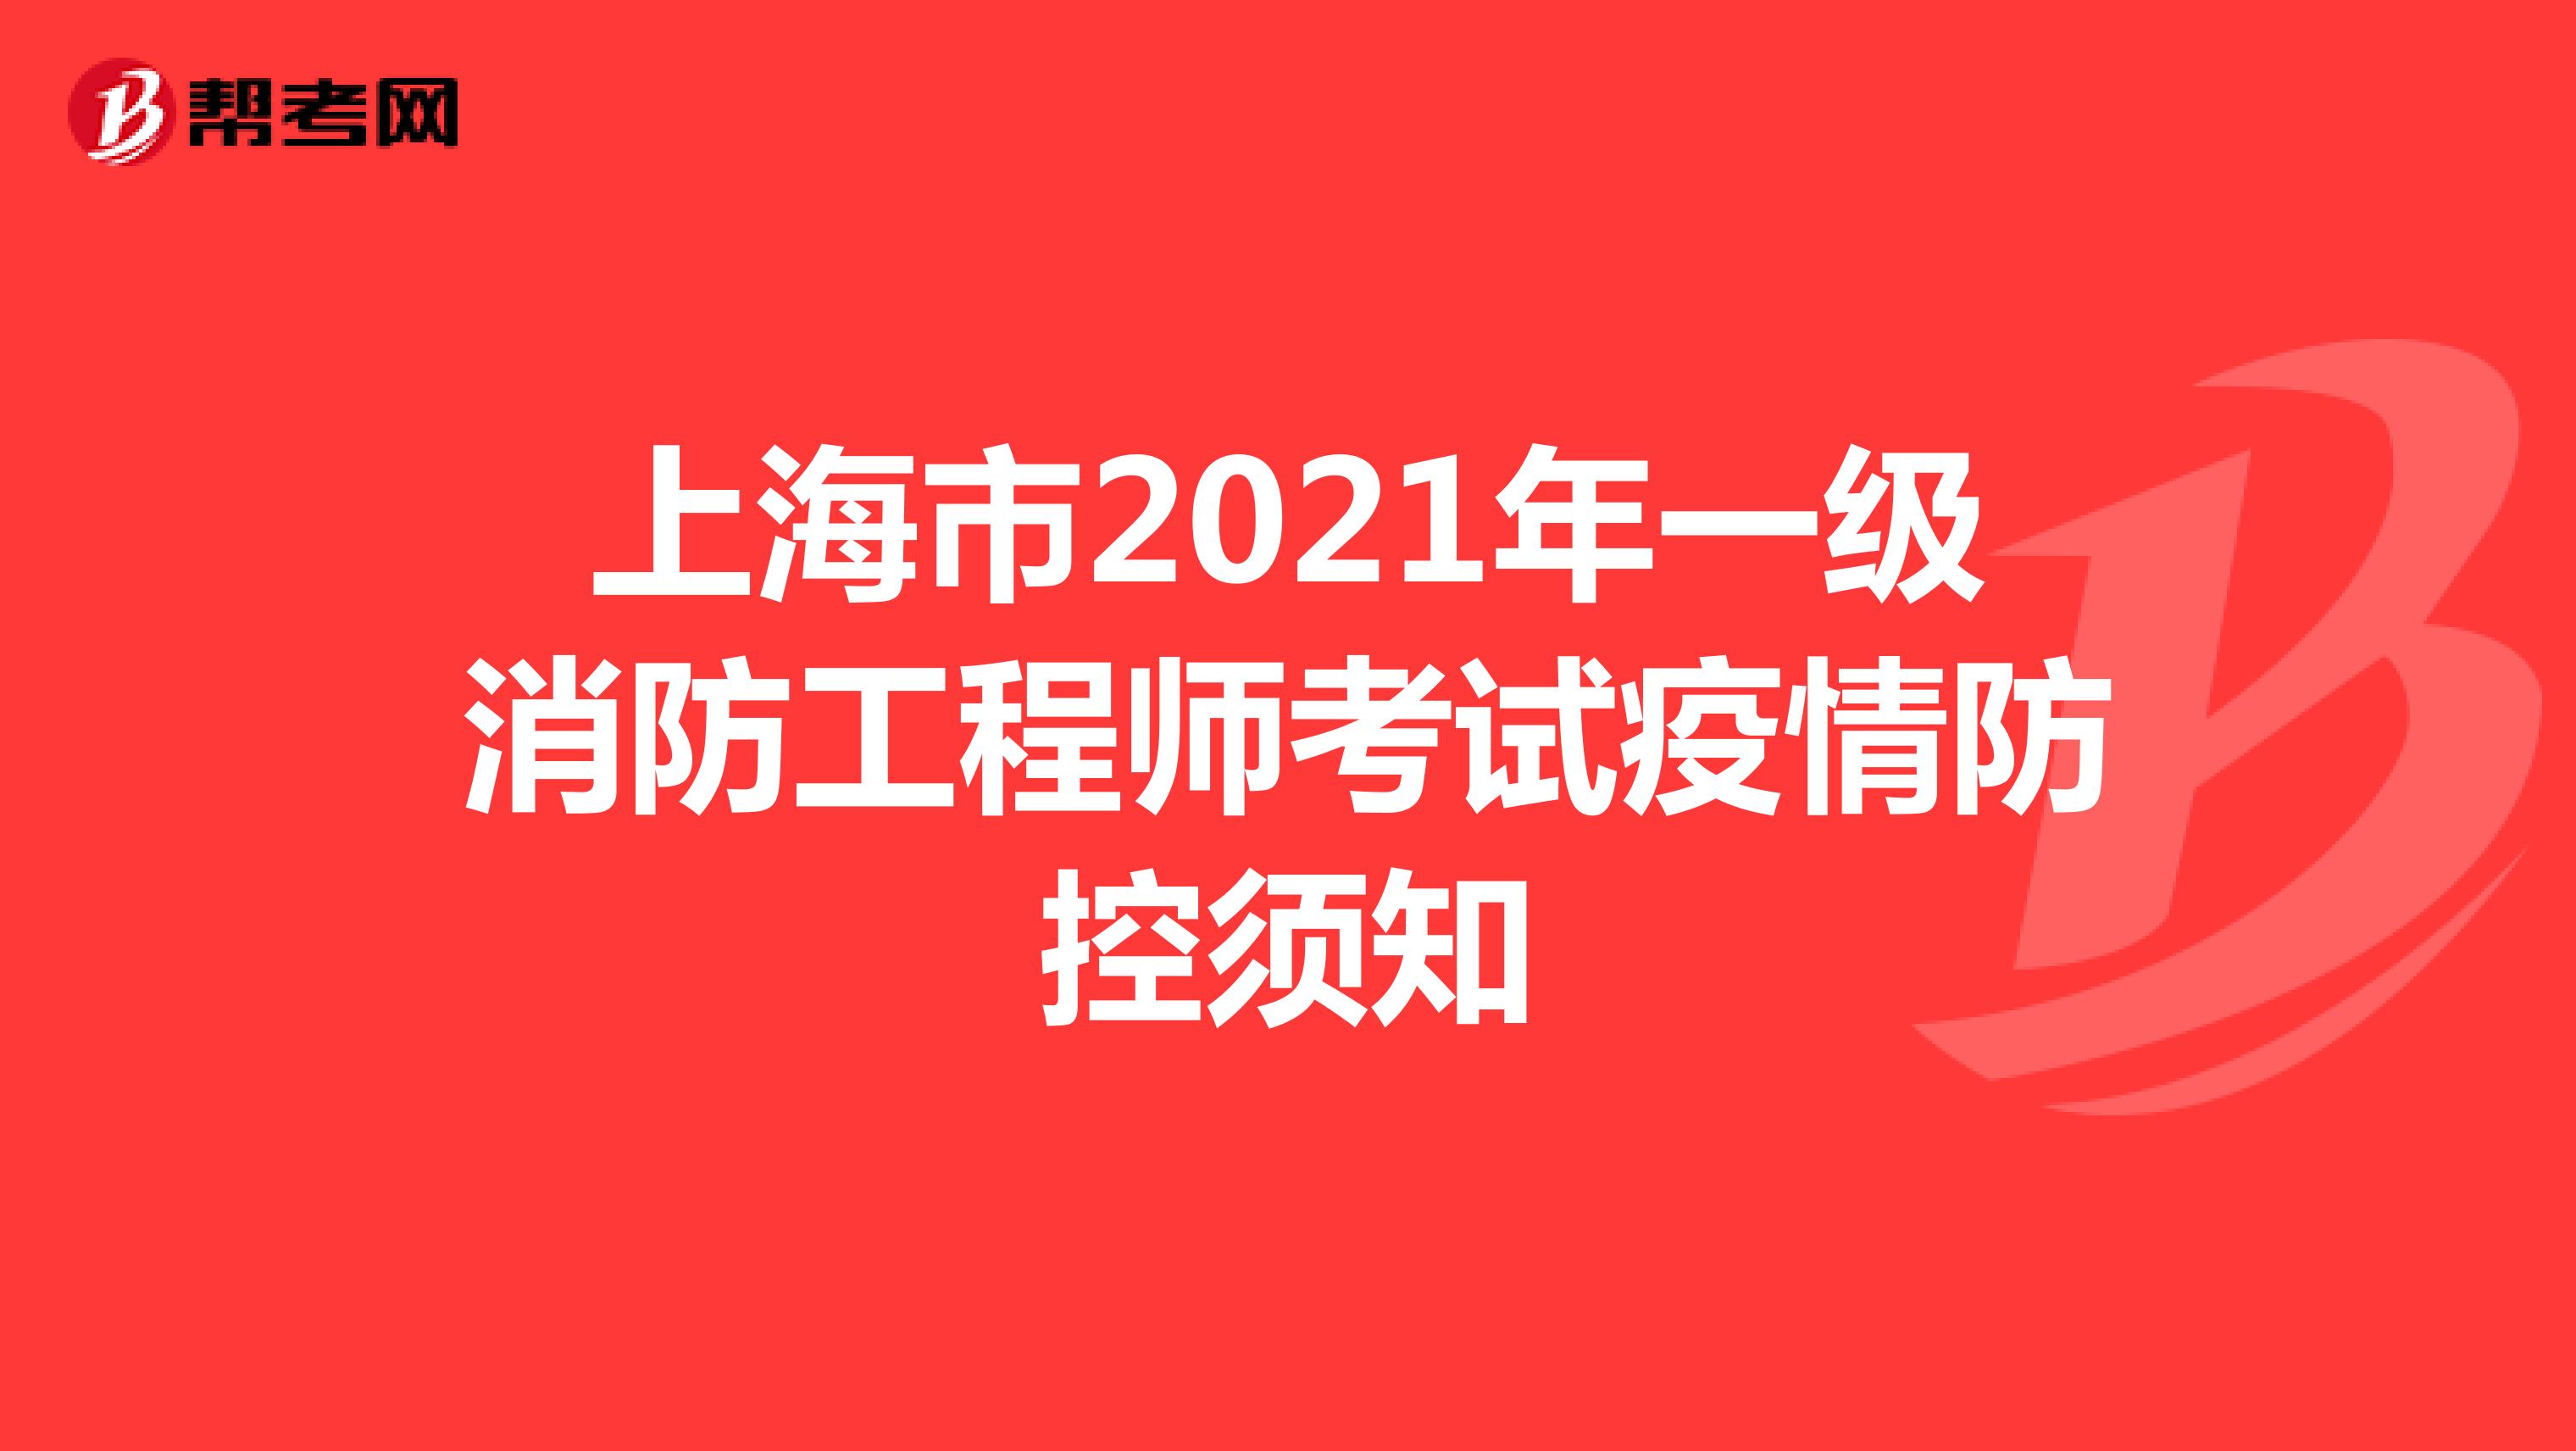 上海市2021年一级消防工程师考试疫情防控须知